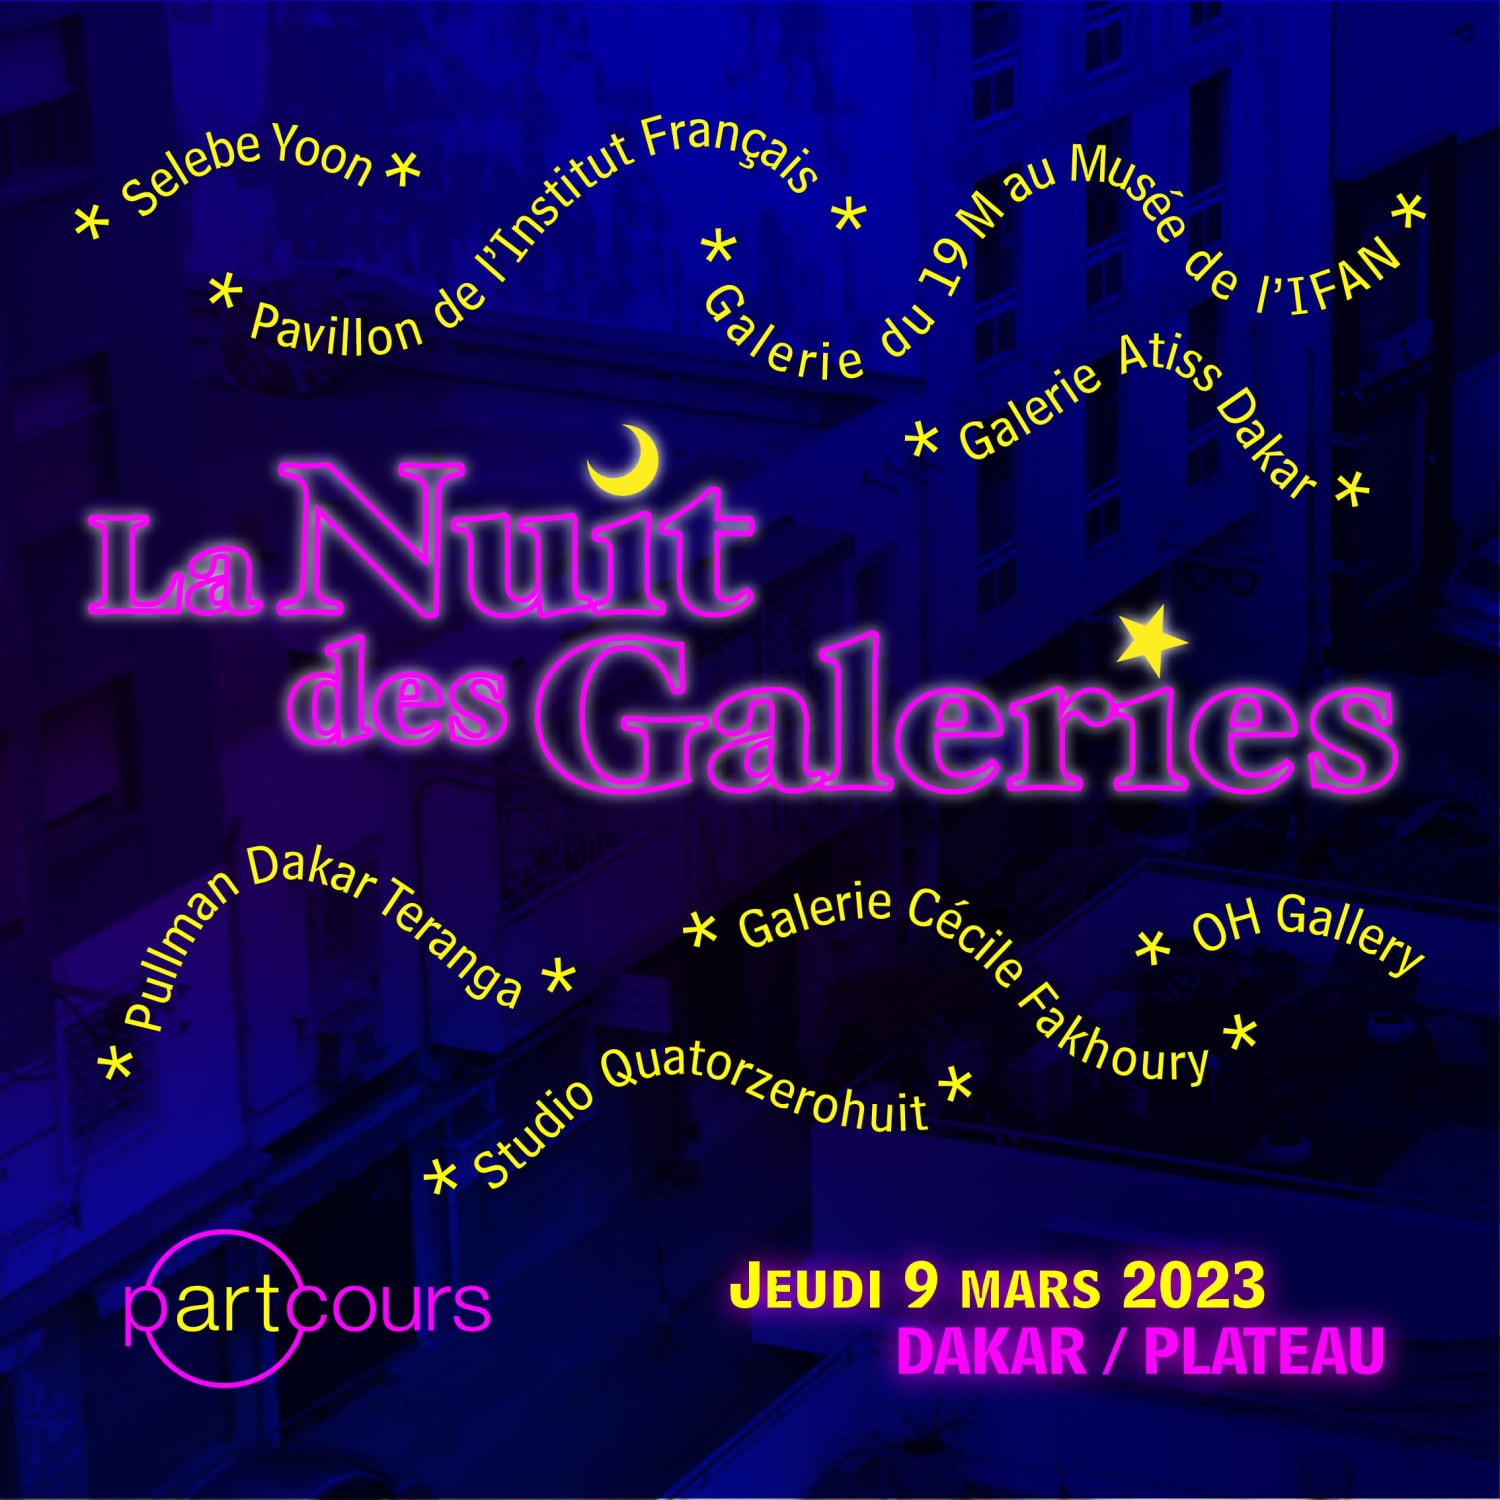 La Nuit des galeries @ Dakar